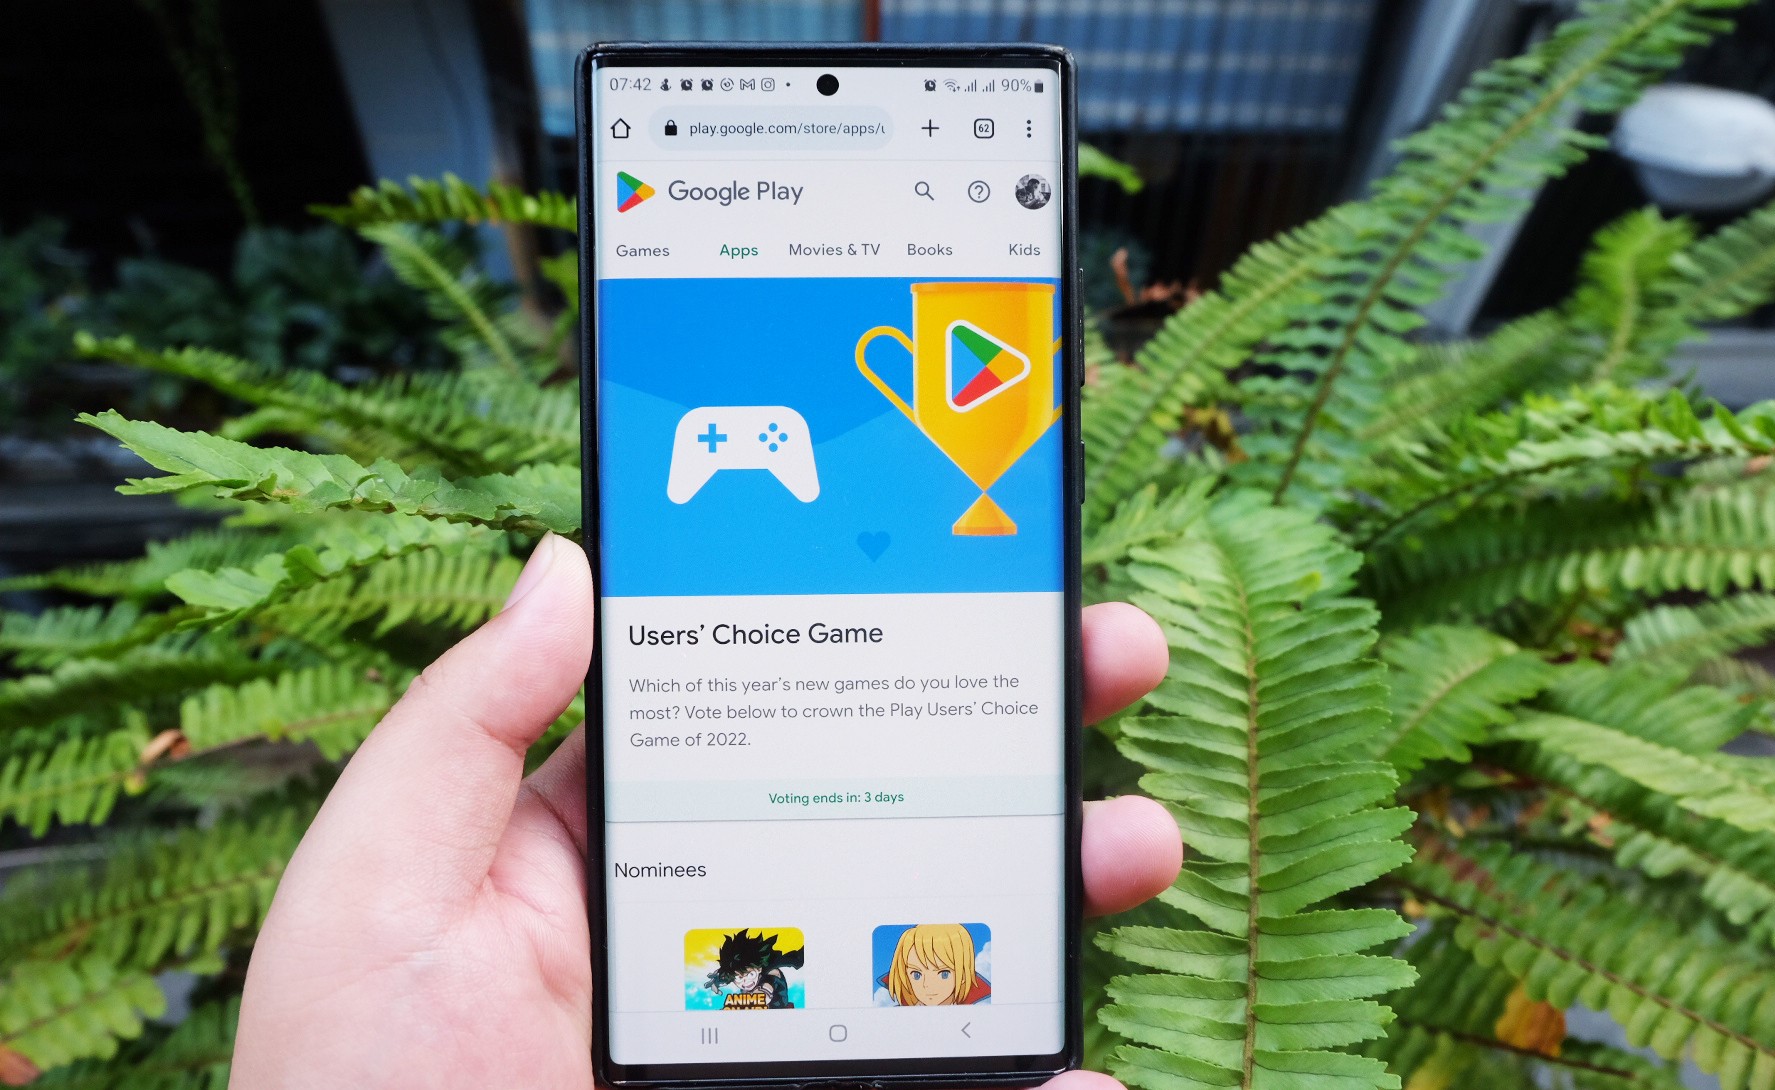 “Gun & Dungeons” do studio Game Việt Nam Topebox phát triển, đã chính thức nhận được đề cử từ Google Play 2022 ở hạng mục trò chơi được yêu thích nhất năm 2022 do người dùng bình chọn.